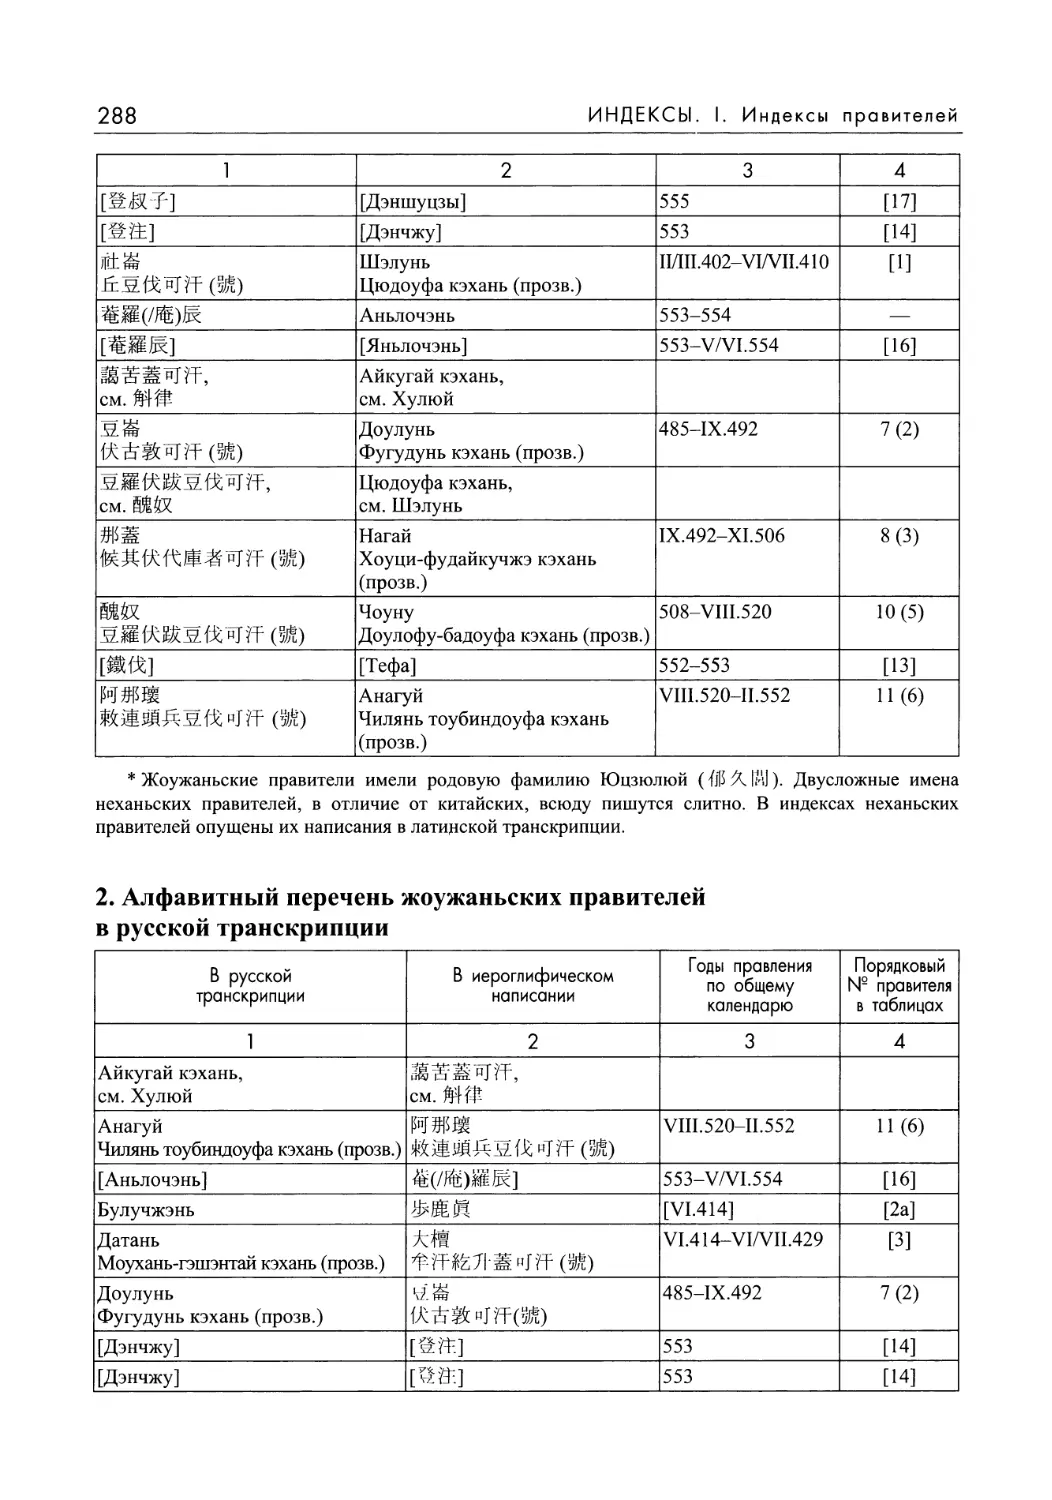 2. Алфавитный перечень жоужаньских правителей в русской транскрипции